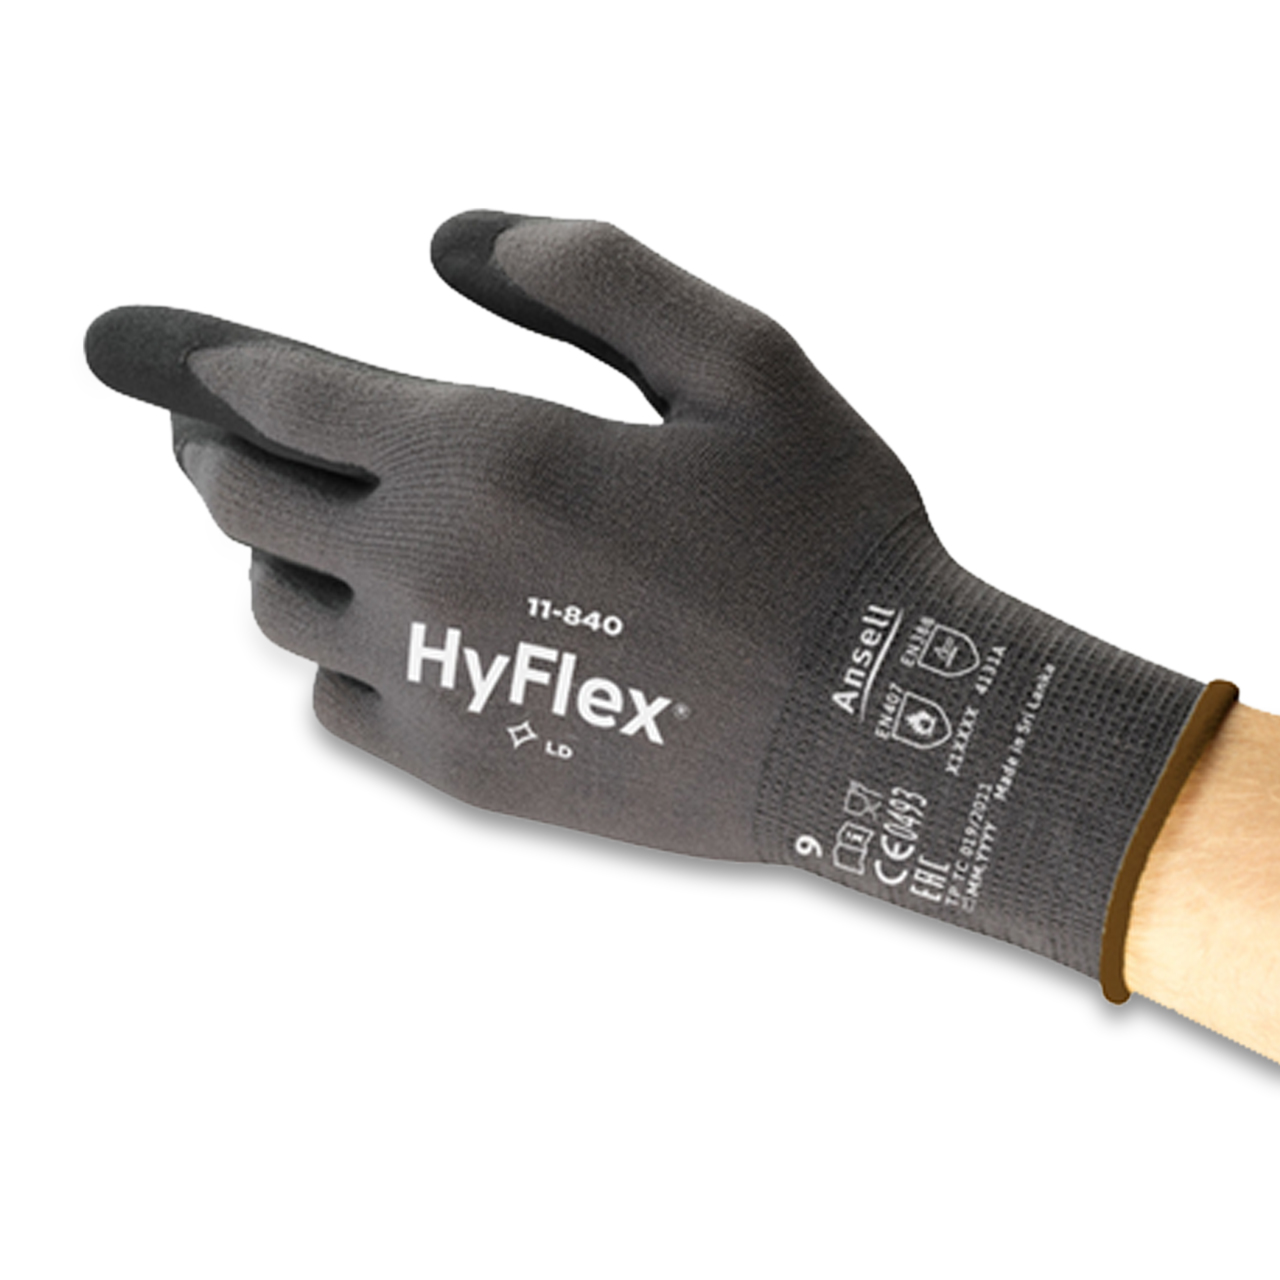 HyFlex® 11-840 XL